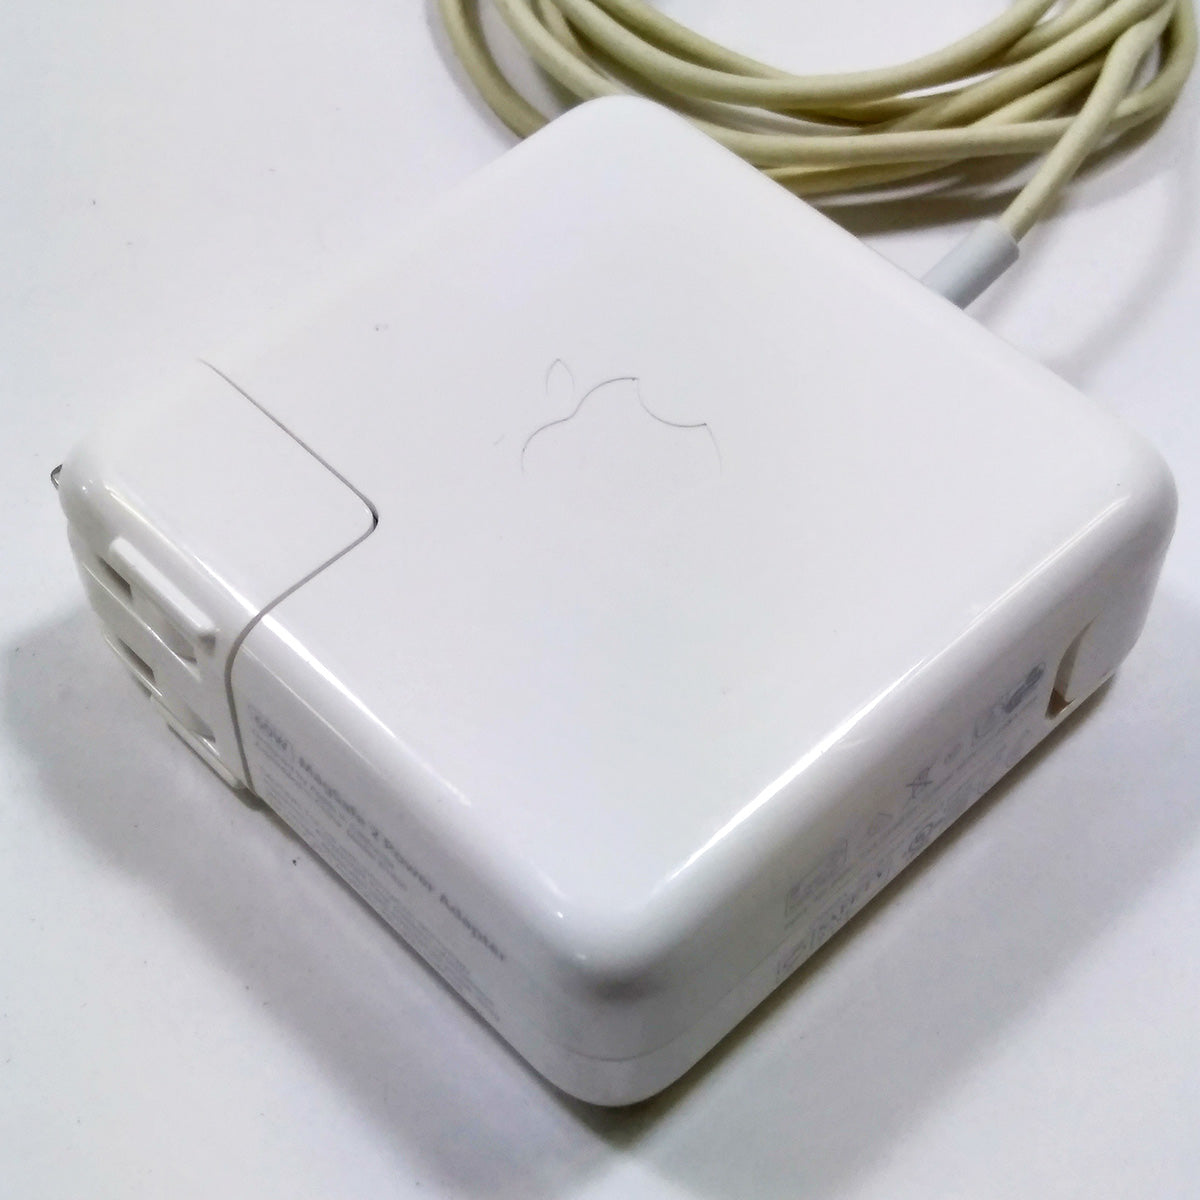 中古品】Apple 60W MagSafe 2電源アダプタ [A_MD565J/A] – 秋葉館